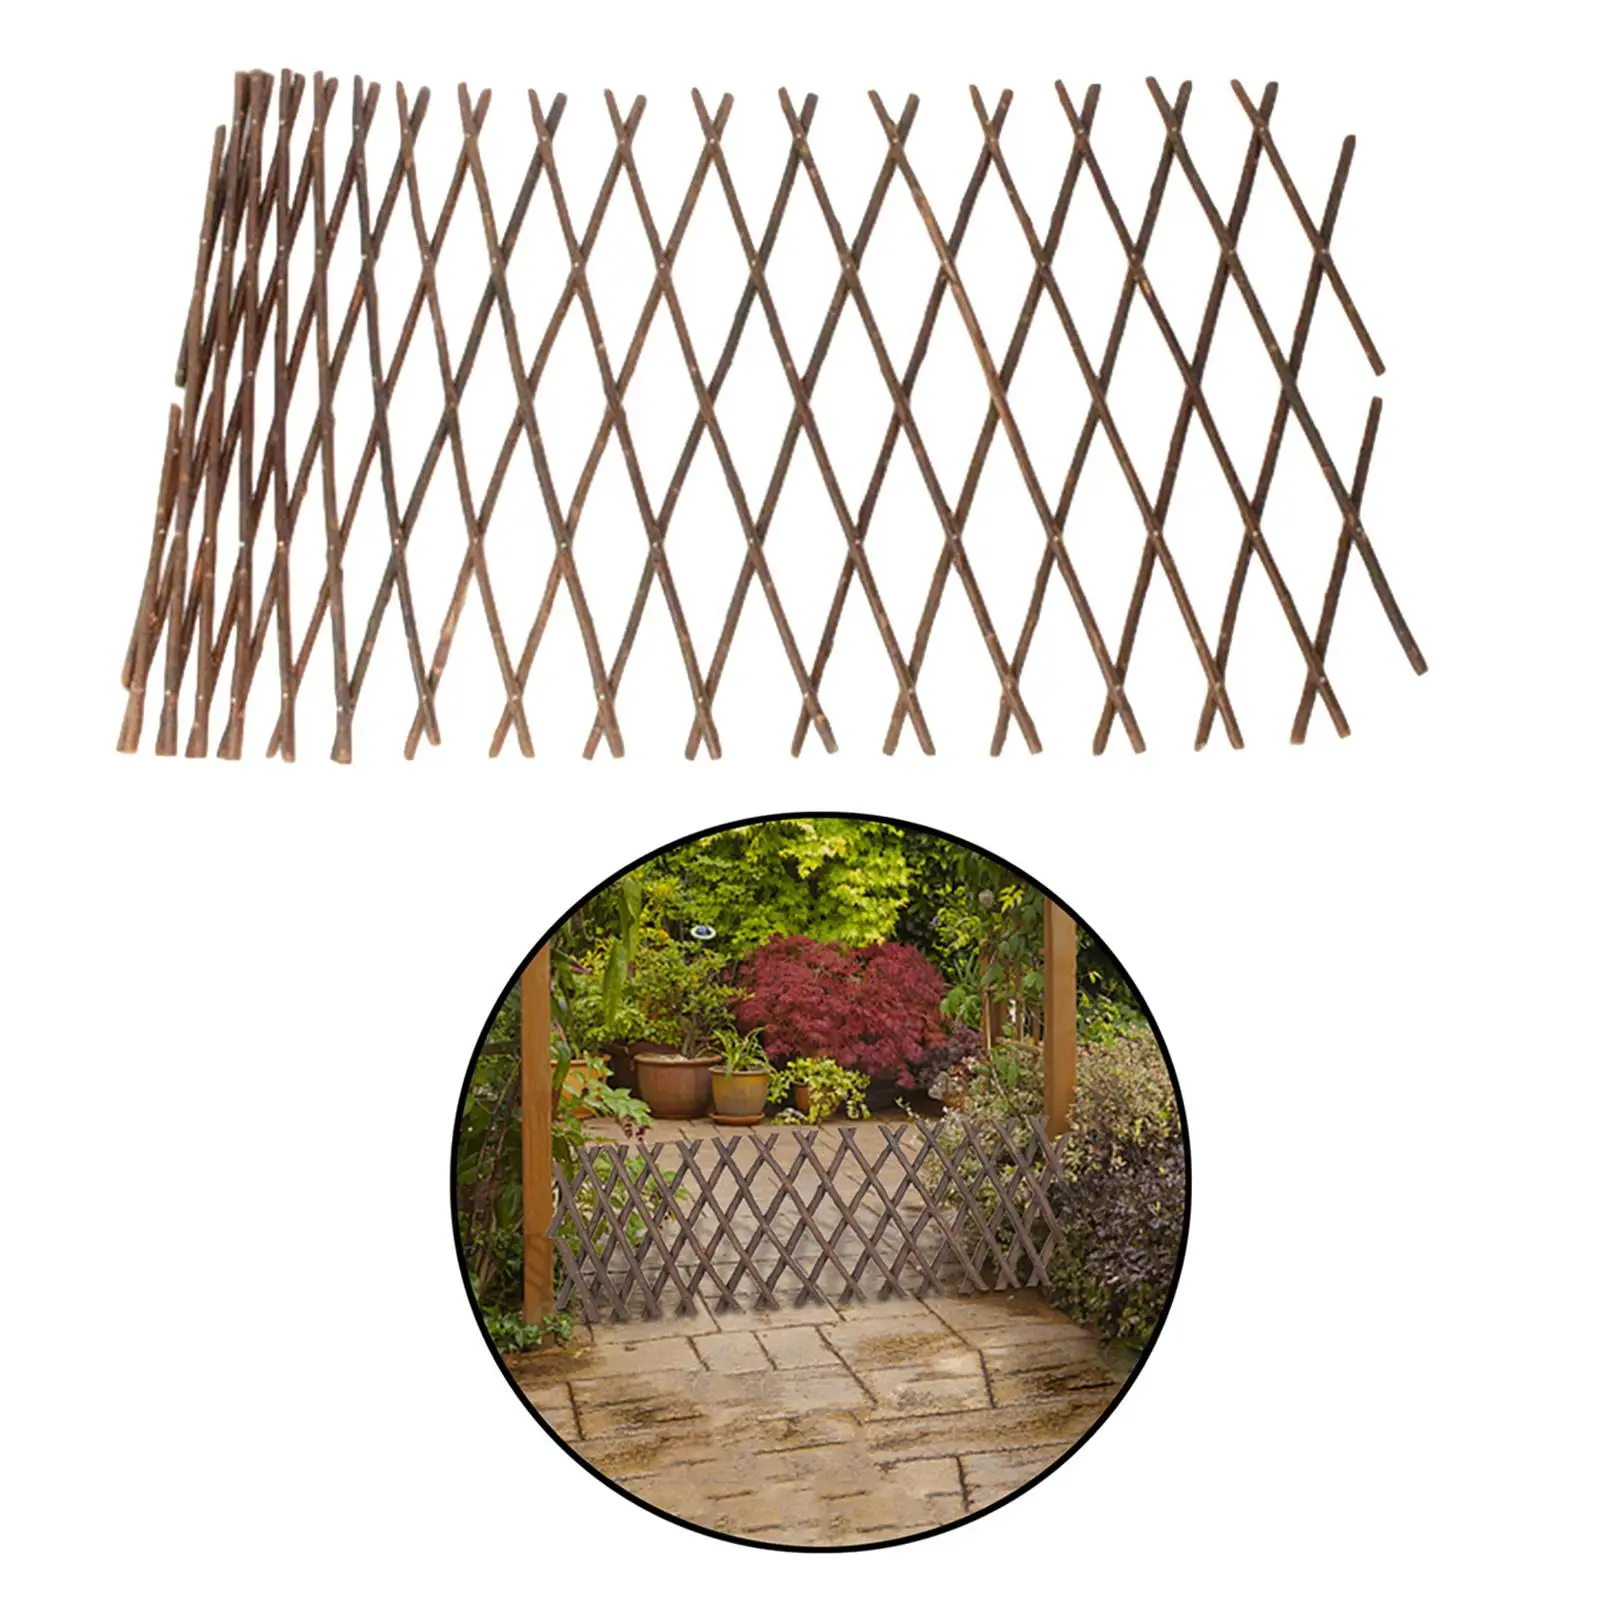 Wooden Garden Fencing Trellis Retractable Support Lattice Panel Screen